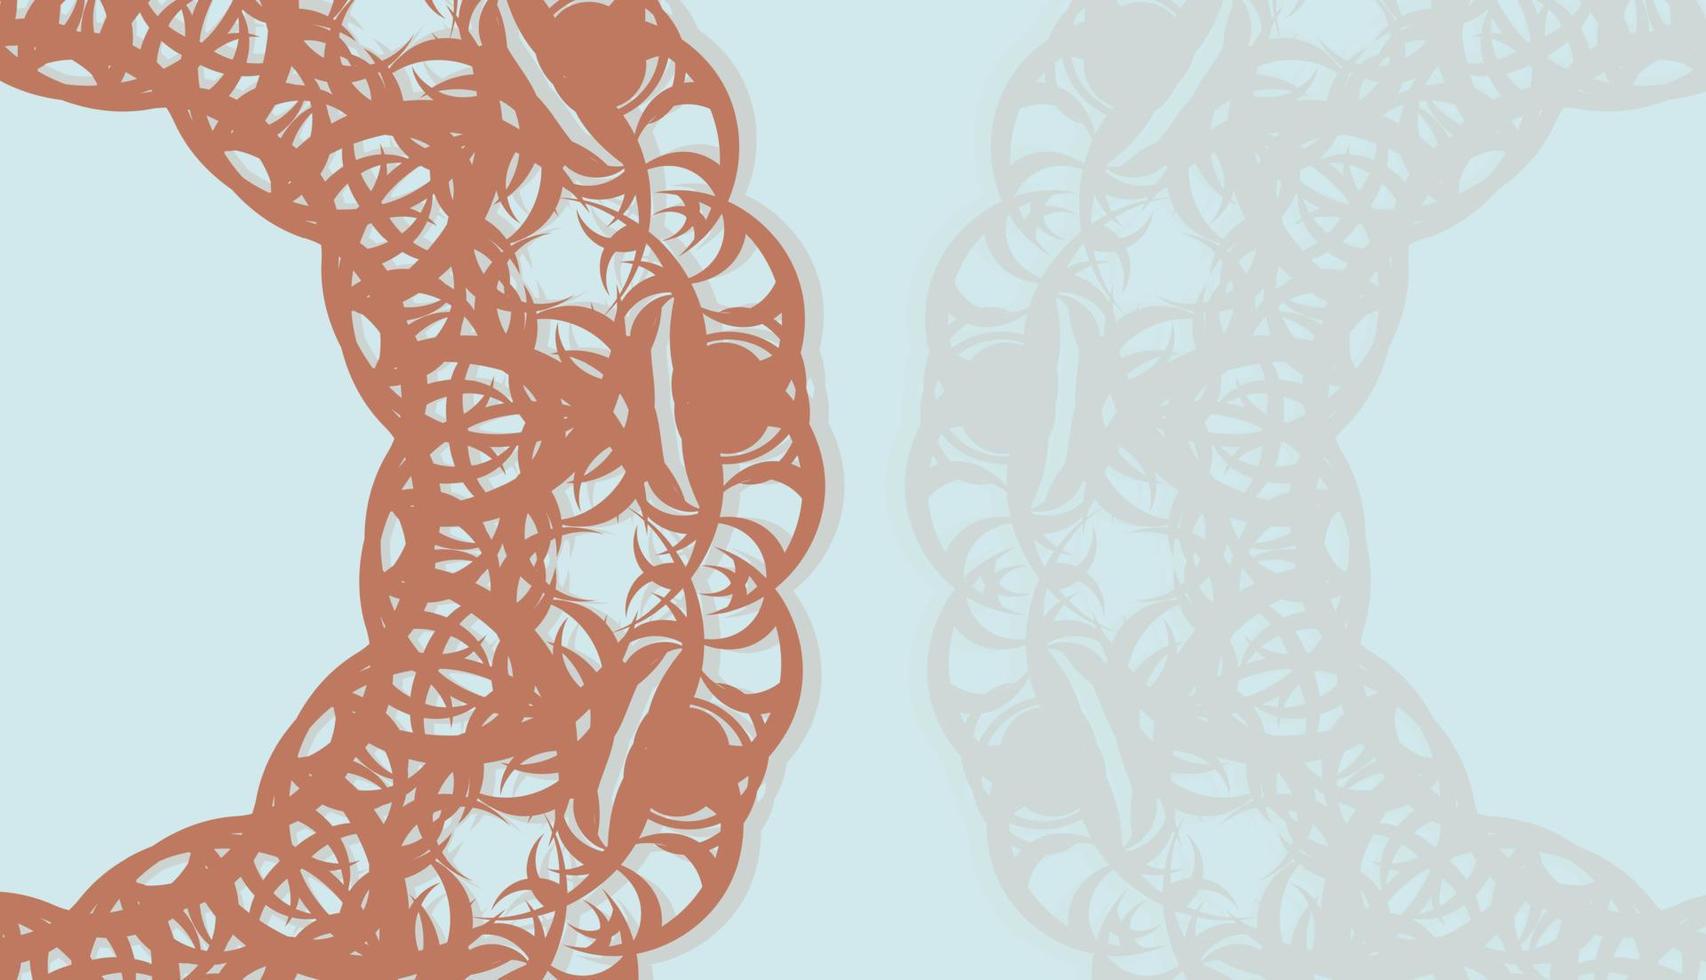 aquamariner Hintergrund mit Mandala-Korallenverzierung für Design unter dem Text vektor